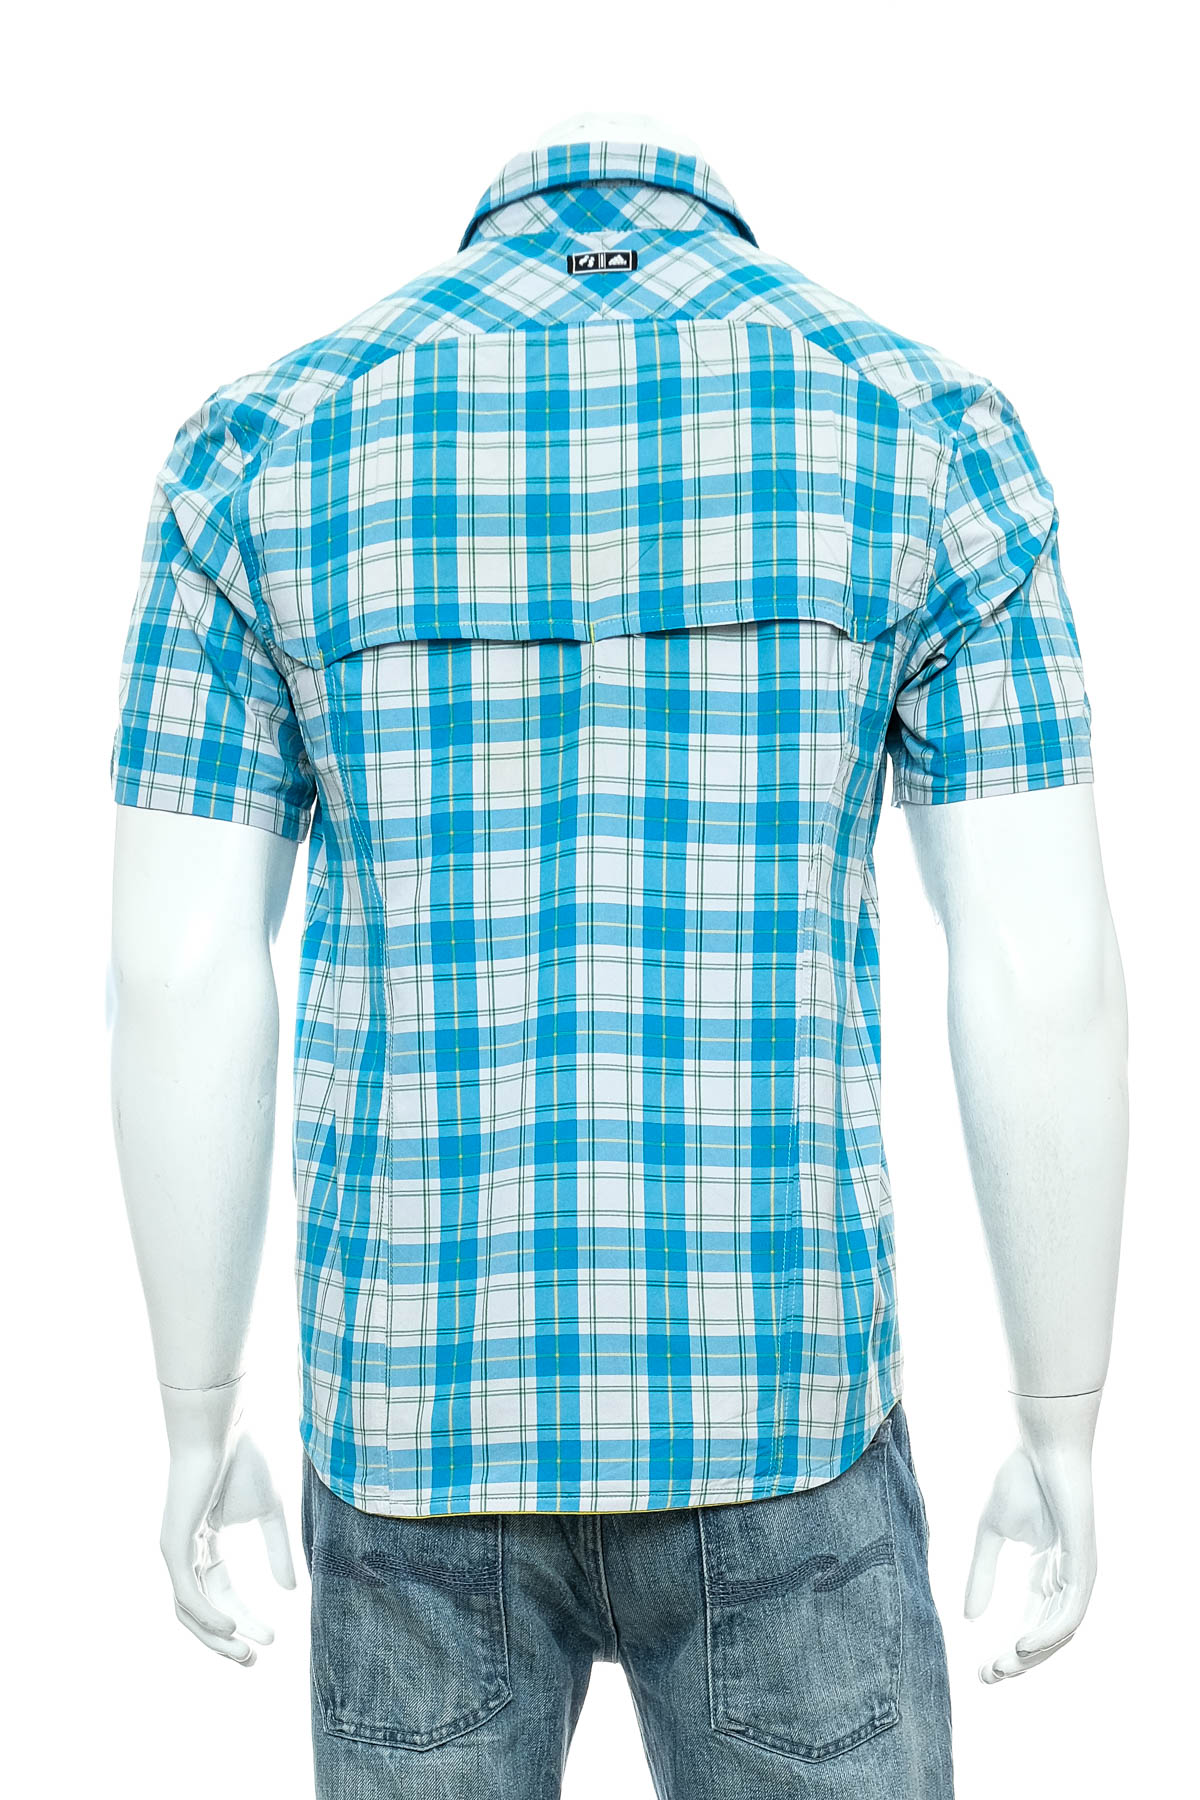 Ανδρικό πουκάμισο - Adidas - 1